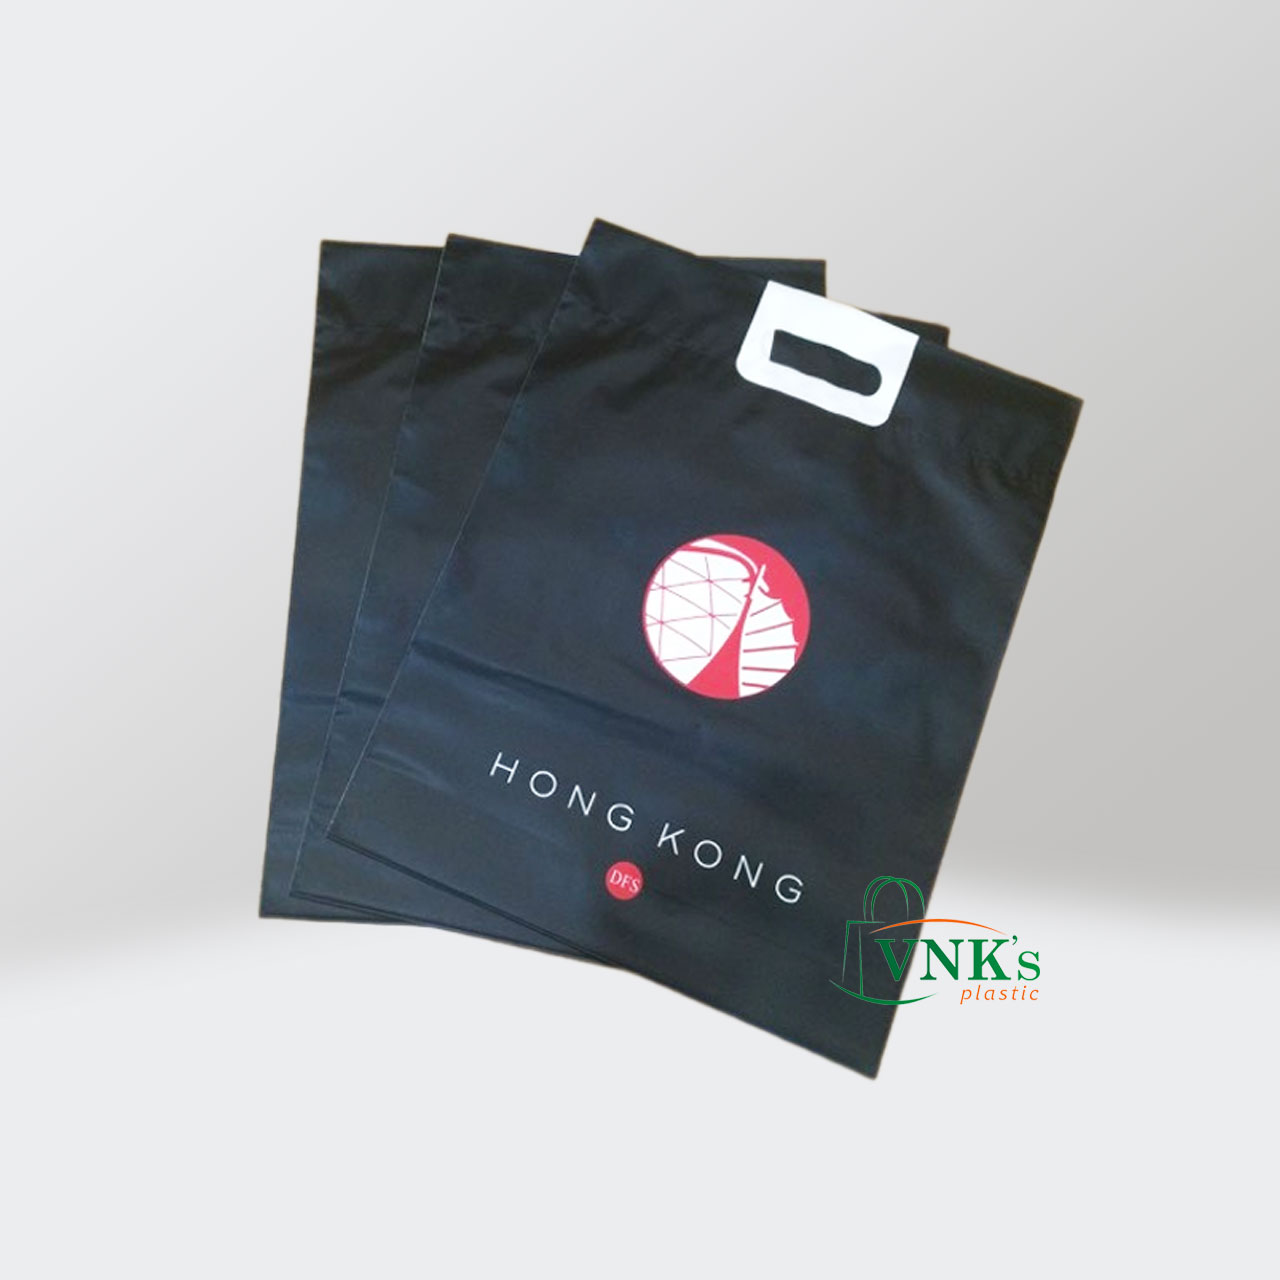 Hong Kong plastic bag with handle